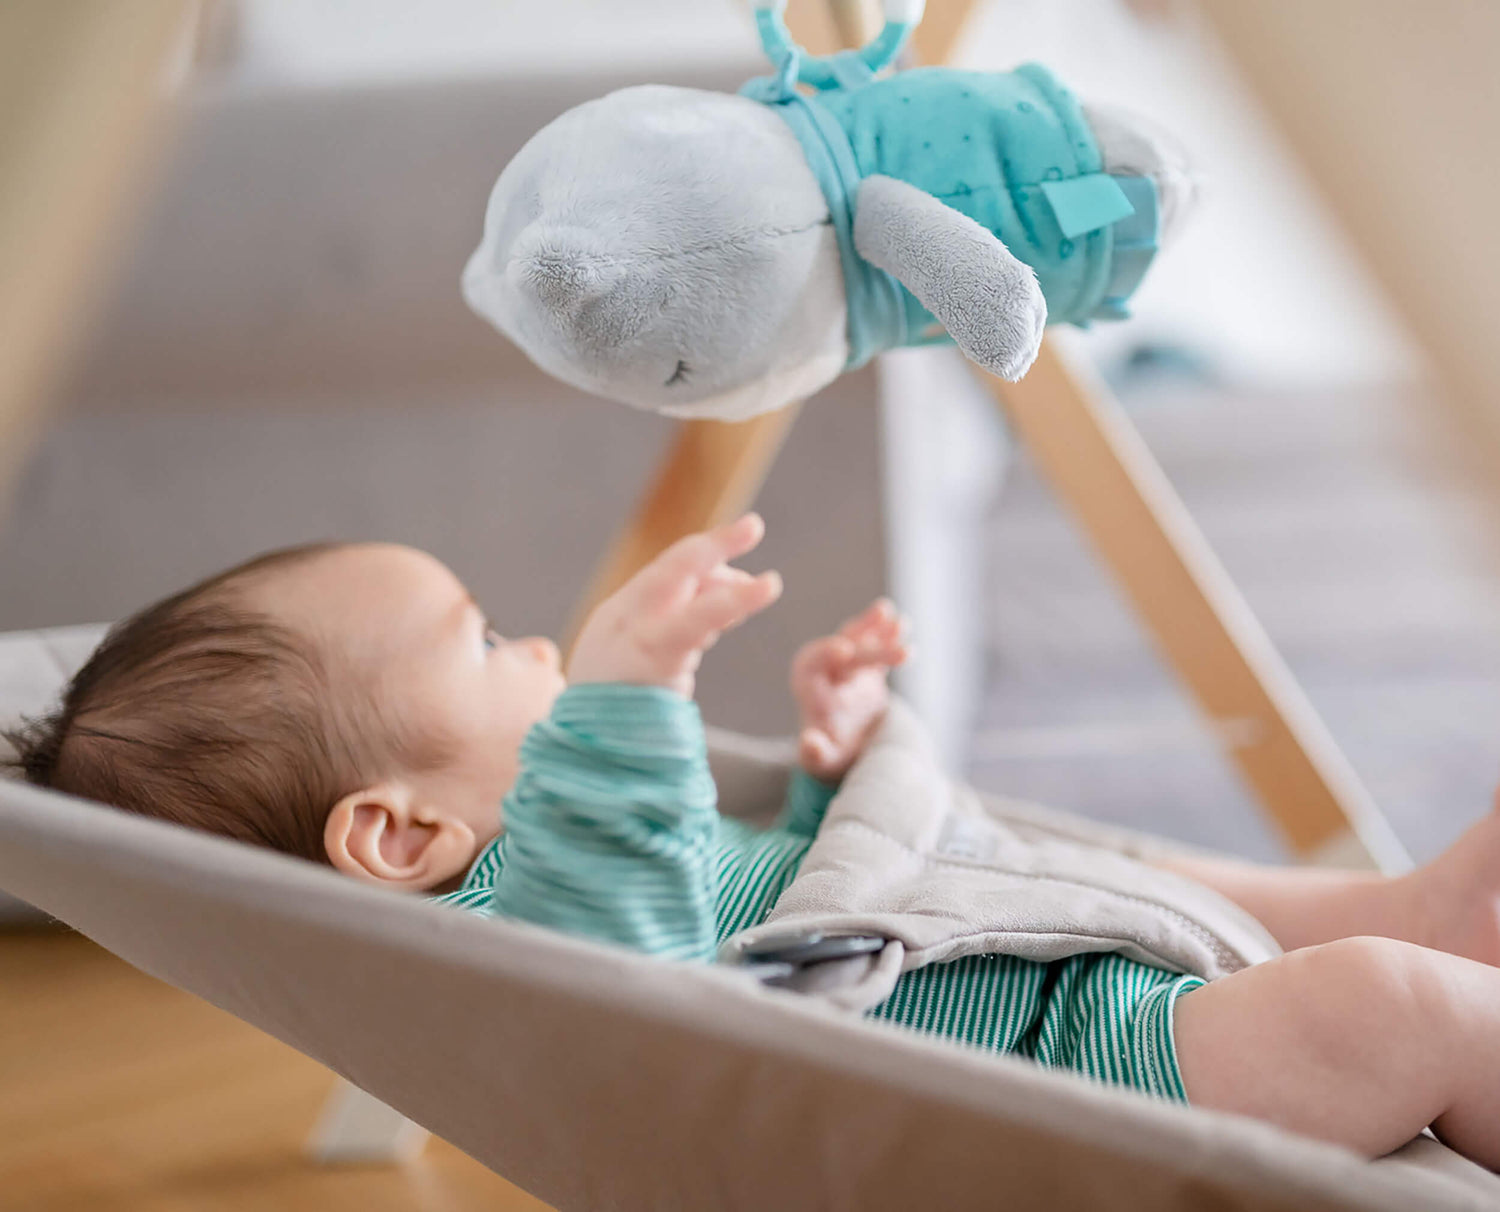 Comment un bébé choisit son doudou ?